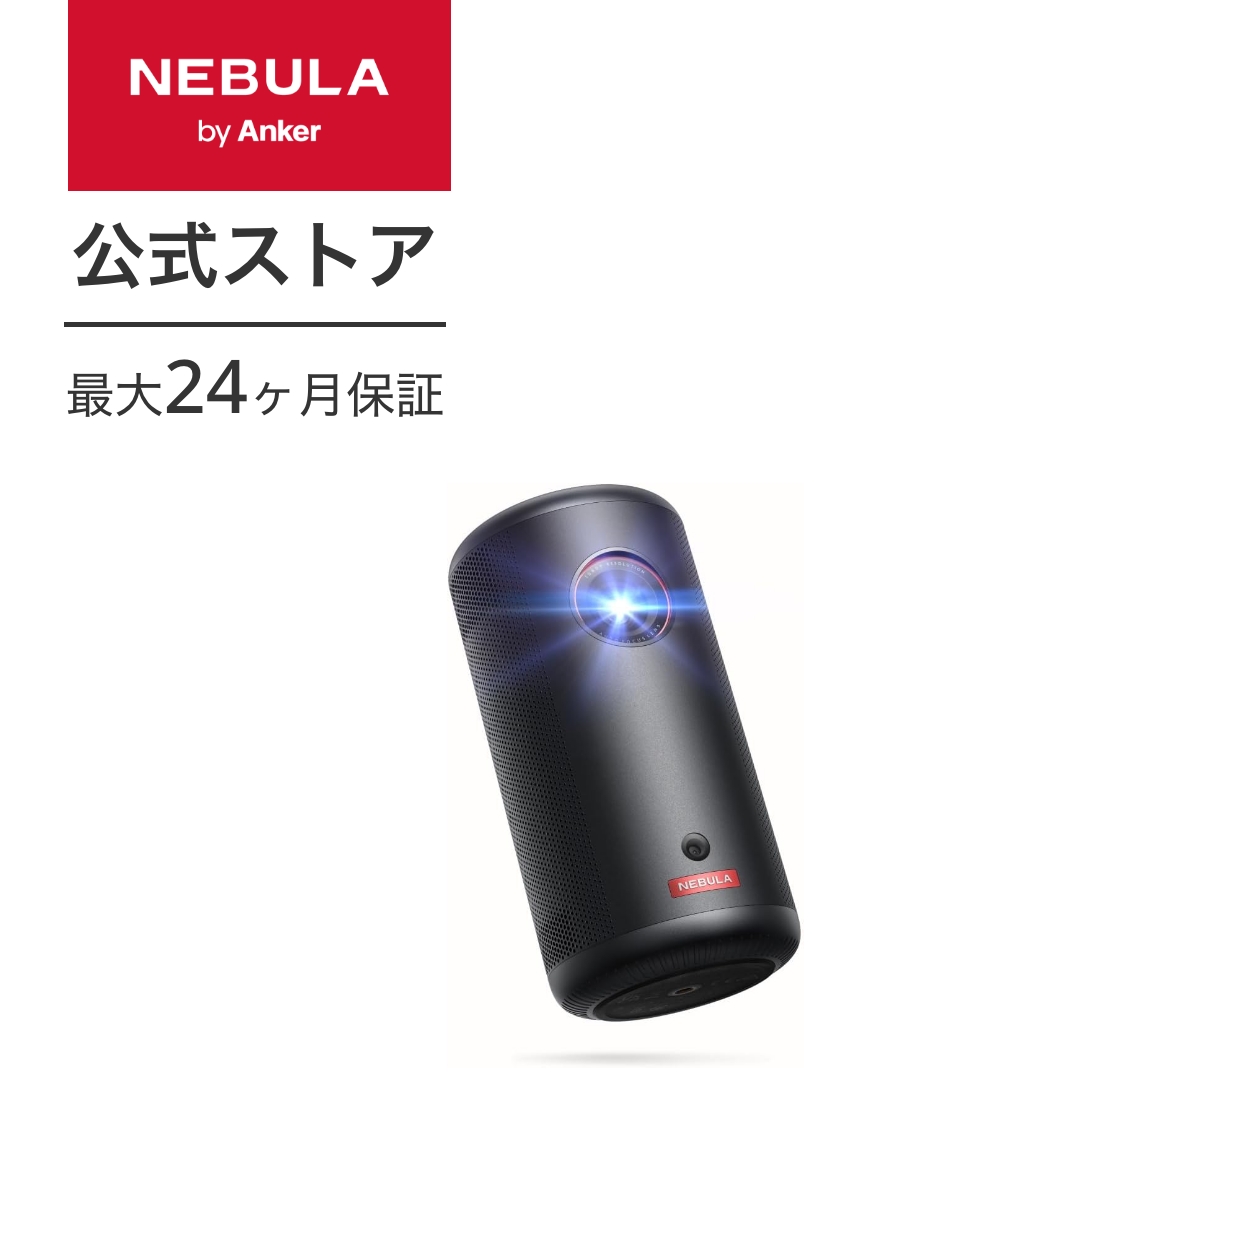 Anker Nebula (nebyula) Capsule 3 мобильный проектор Google TV полный HD 200ANSI люмен максимальный 120 дюймовый 8W динамик Focus регулировка якорь nebyula